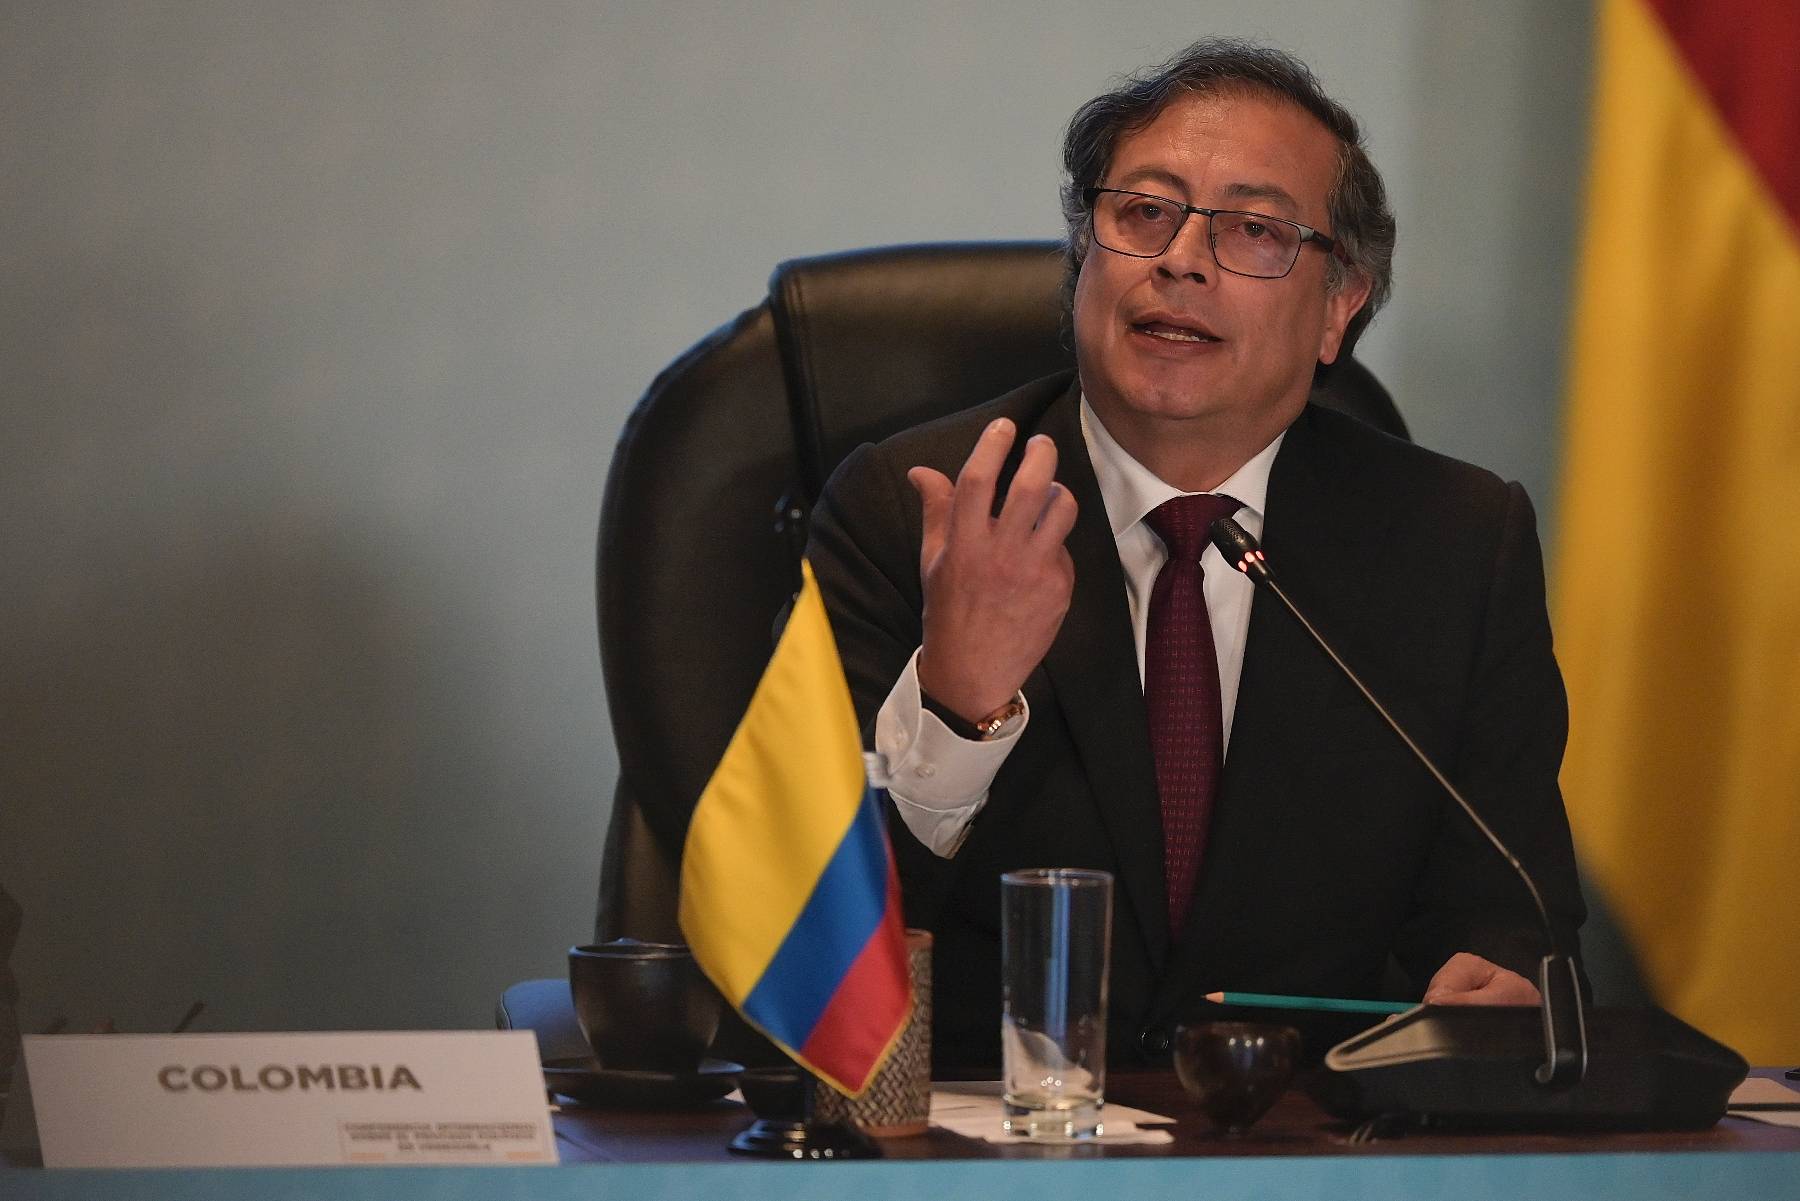 Colombie: Petro appelle à la démission de son gouvernement, crise politique ouverte